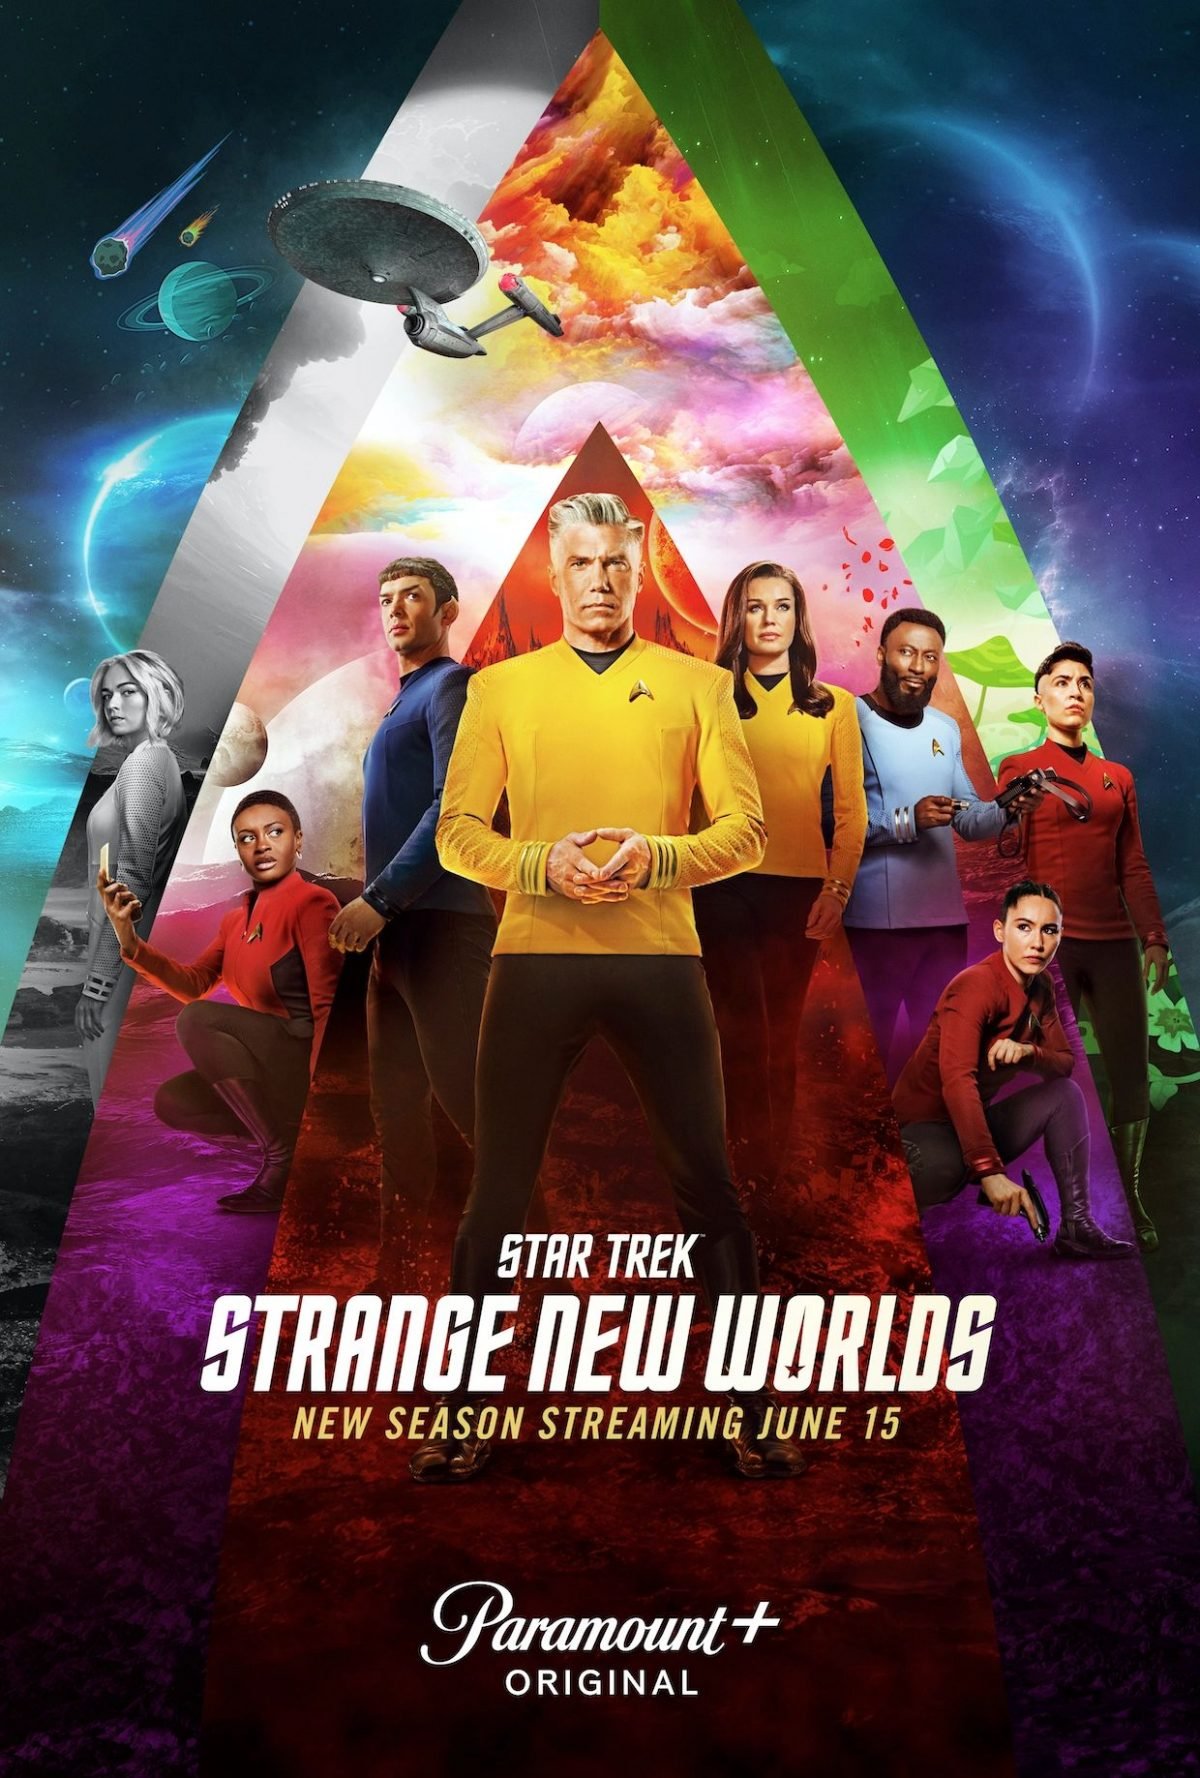 Star Trek Season 2 Strange New Worlds full crew poster